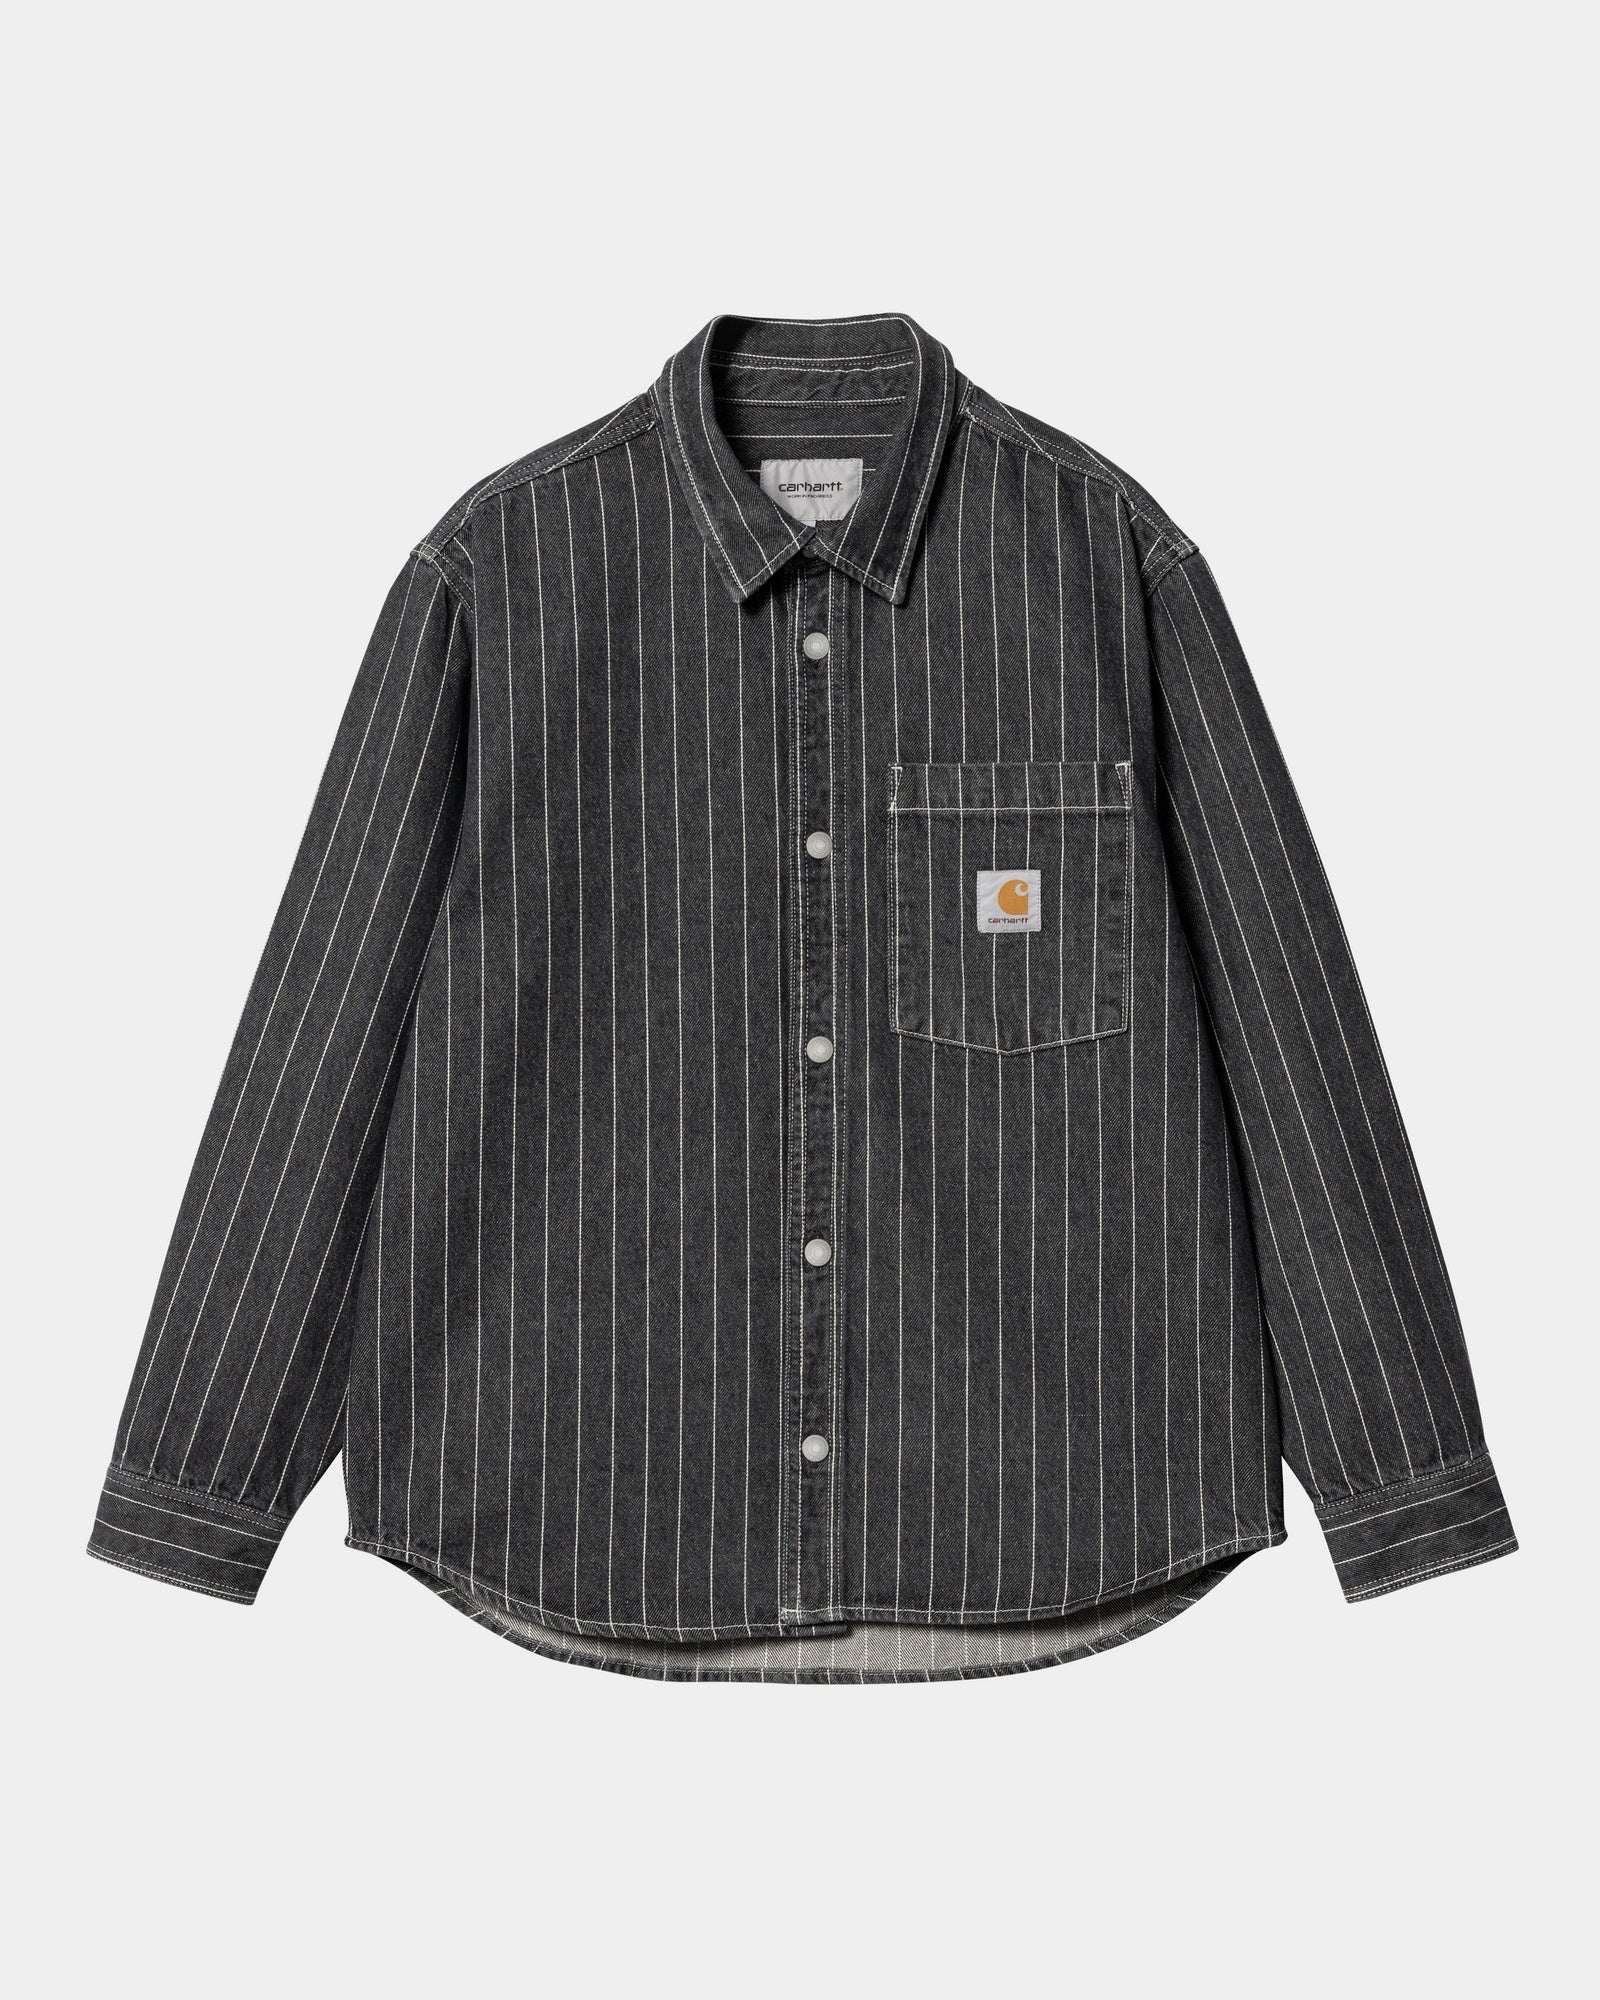 칼하트WIP Carhartt Orlean Stripe Shirt Jacket,Black / White stone washed